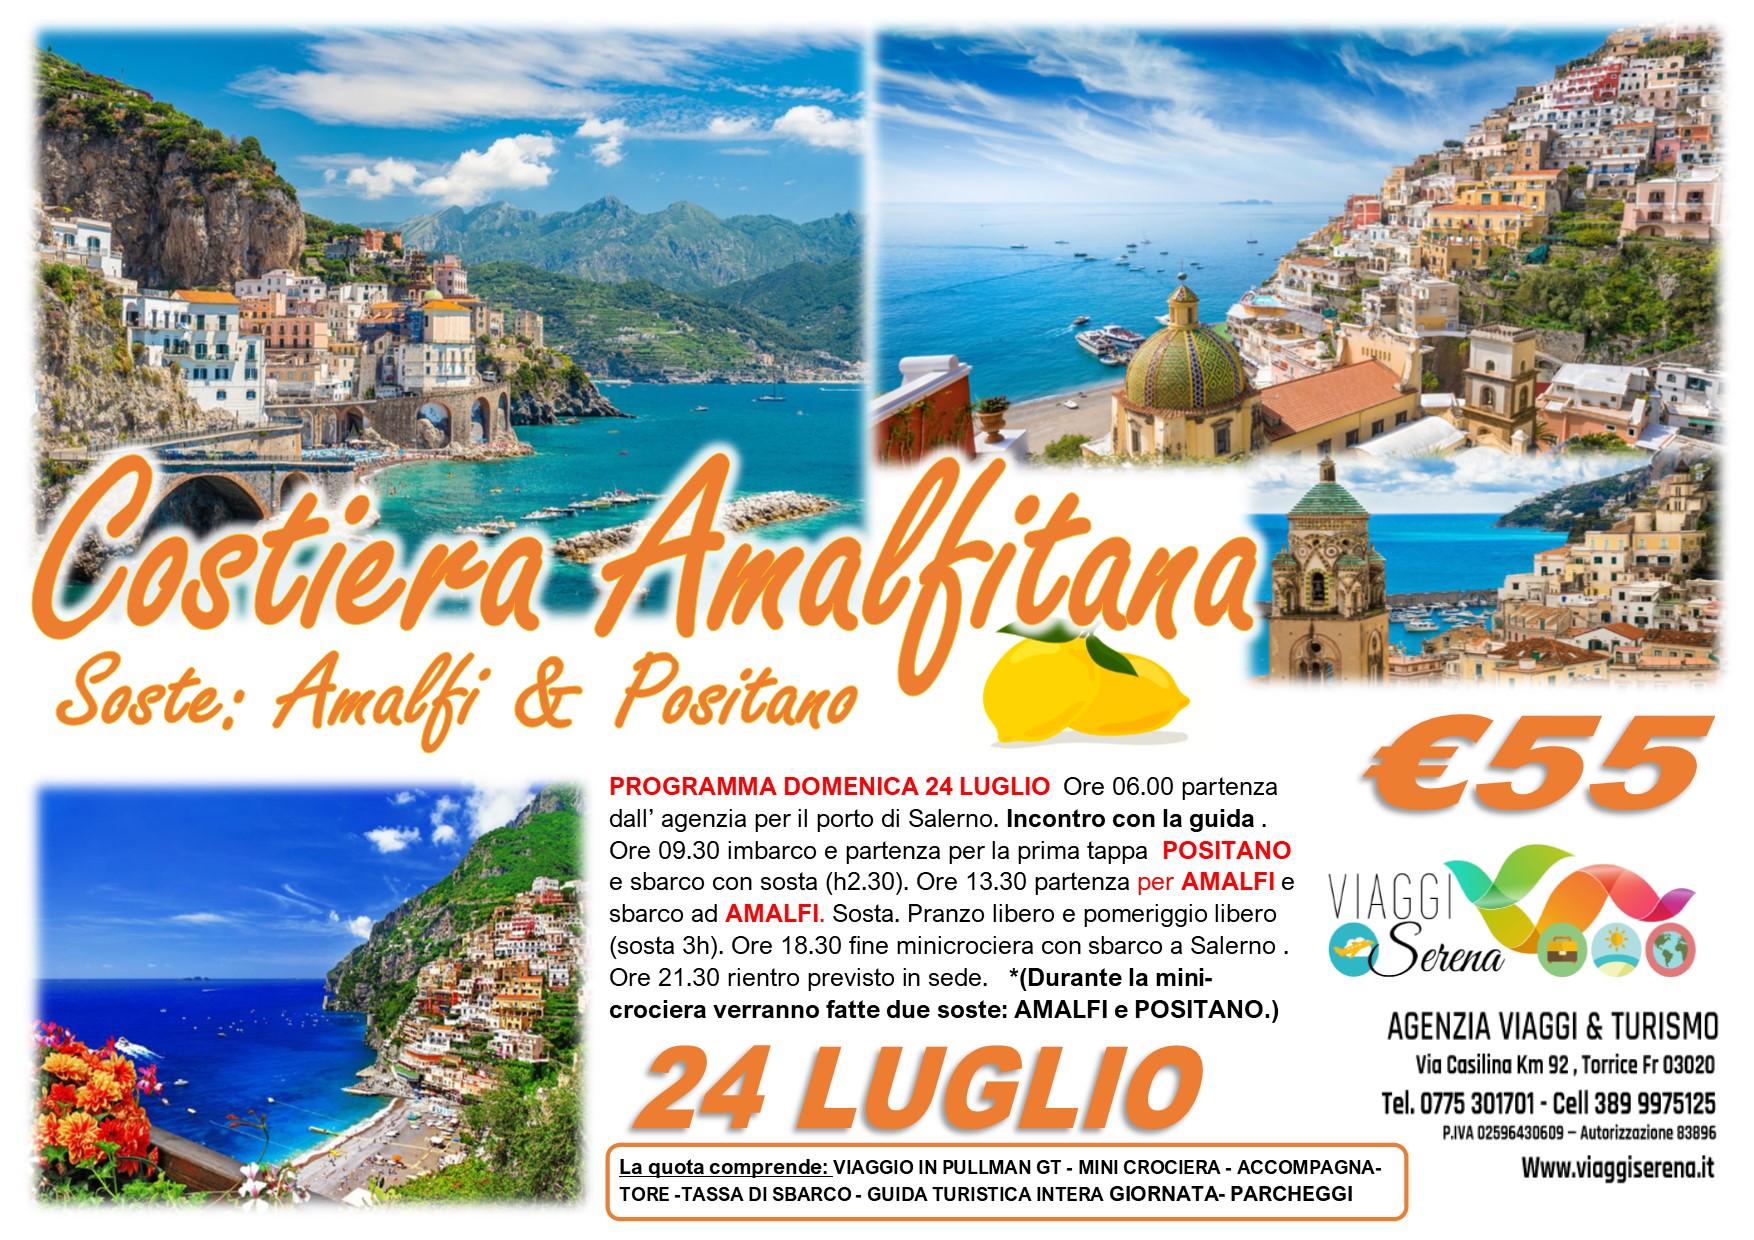 Viaggi di Gruppo: Costiera Amalfitana ” Amalfi & Positano” 24 Luglio €55,00